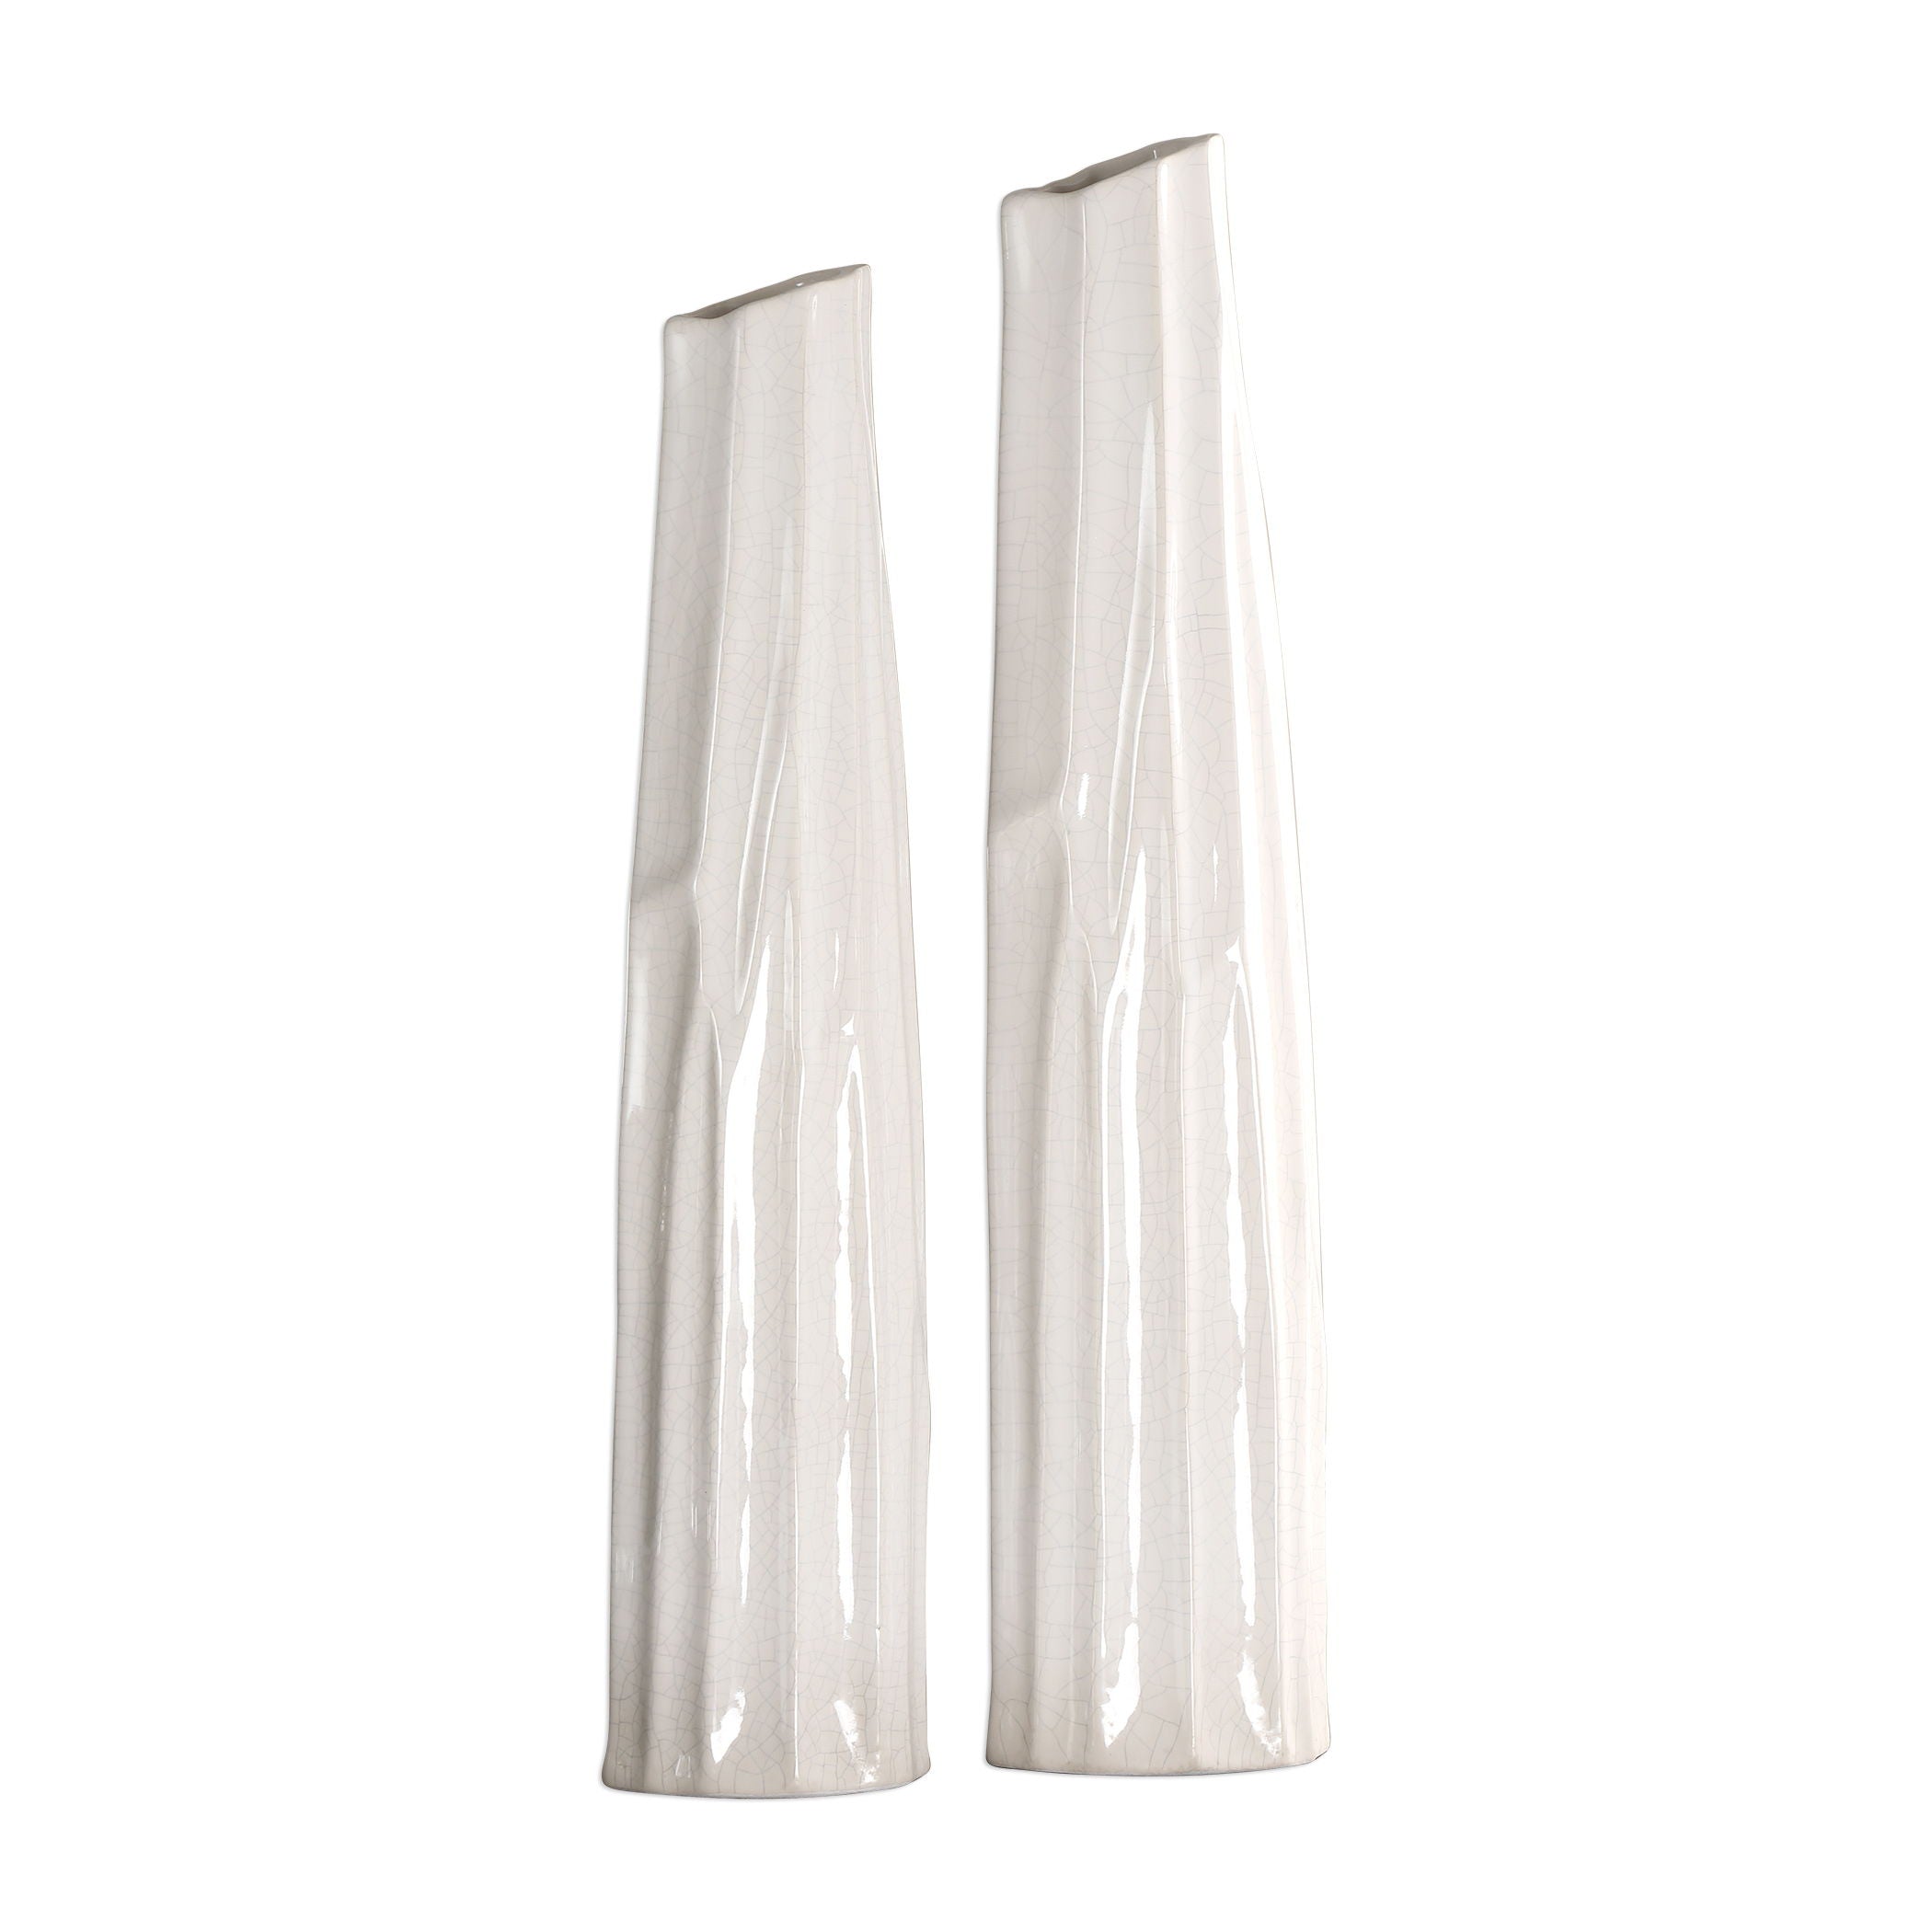 Kenley - Crackled Vases (Set of 2) - White